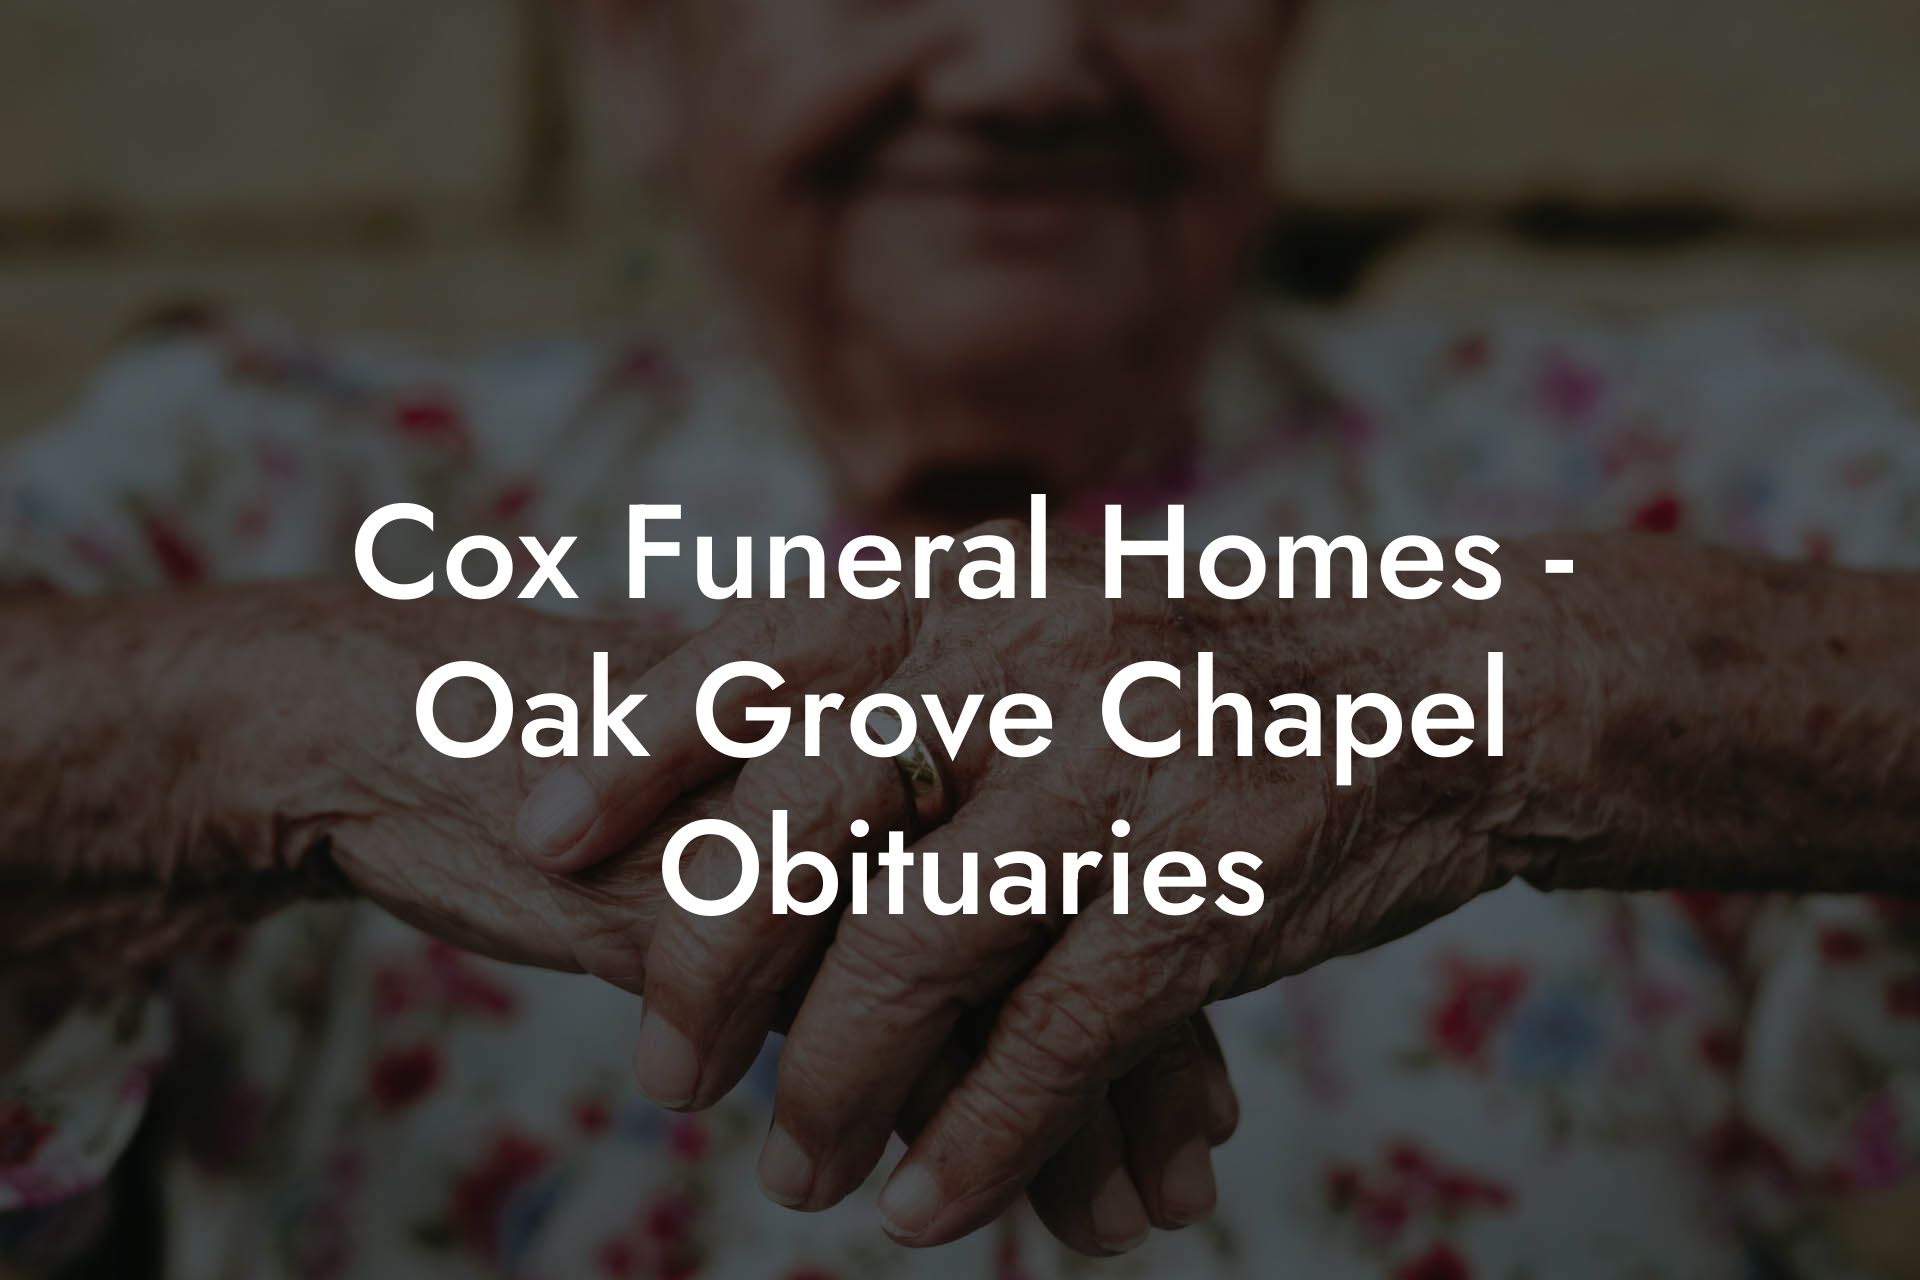 Cox Funeral Homes - Oak Grove Chapel Obituaries